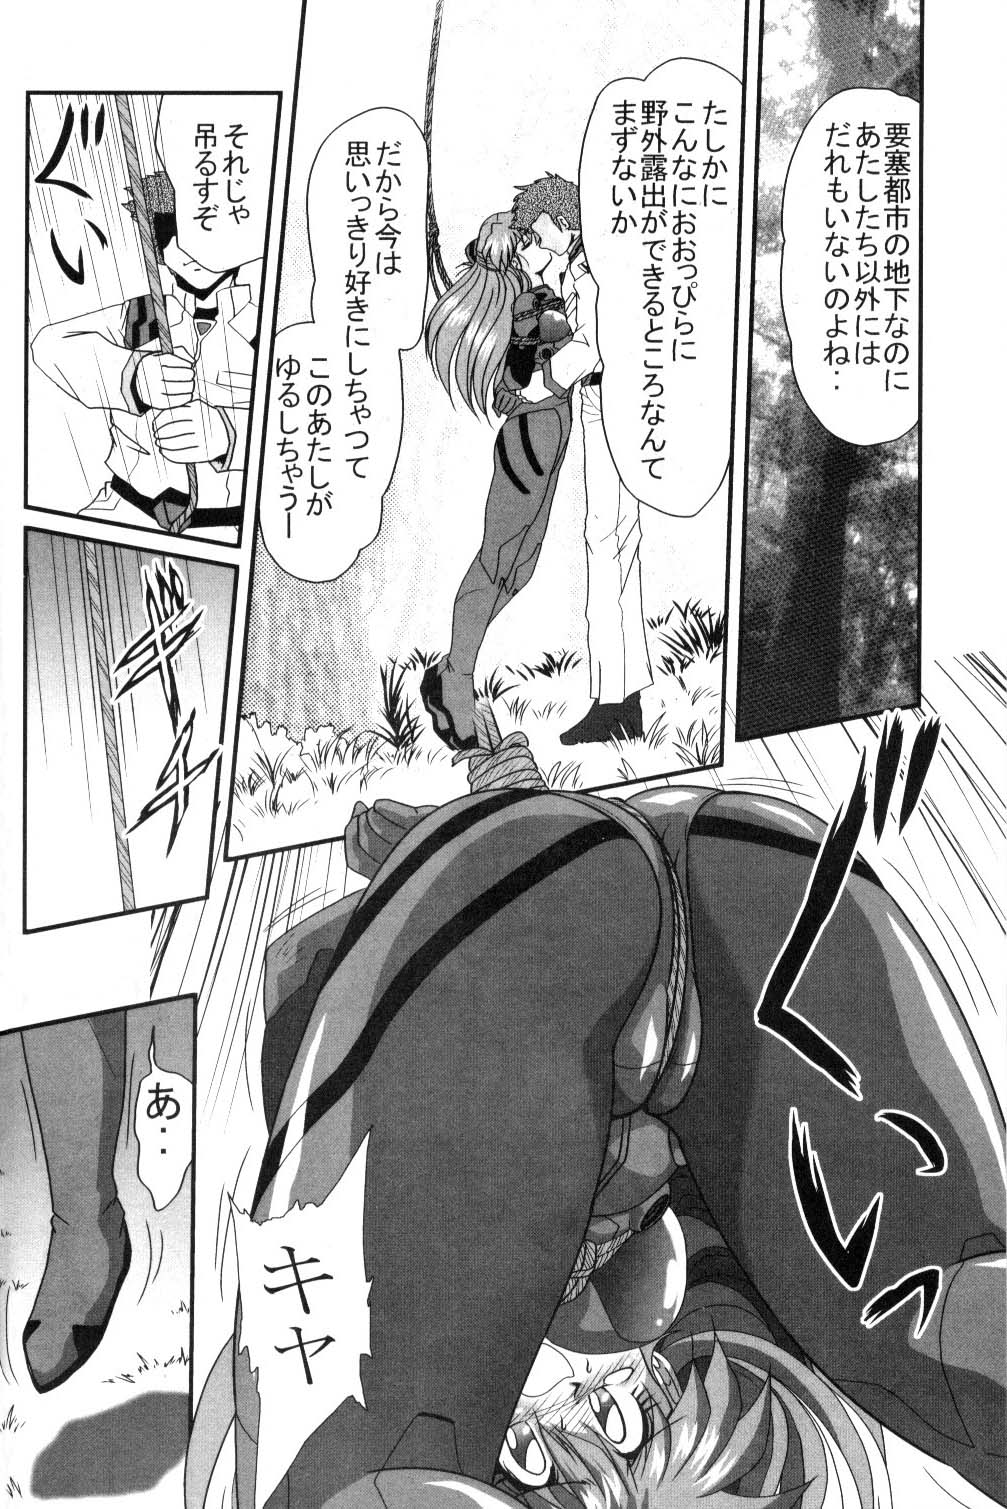 [Thirty Saver Street 2D Shooting (Maki Hideto, Sawara Kazumitsu, Yonige-ya No Kyou)] Second Uchuu Keikaku (Neon Genesis Evangelion) page 13 full